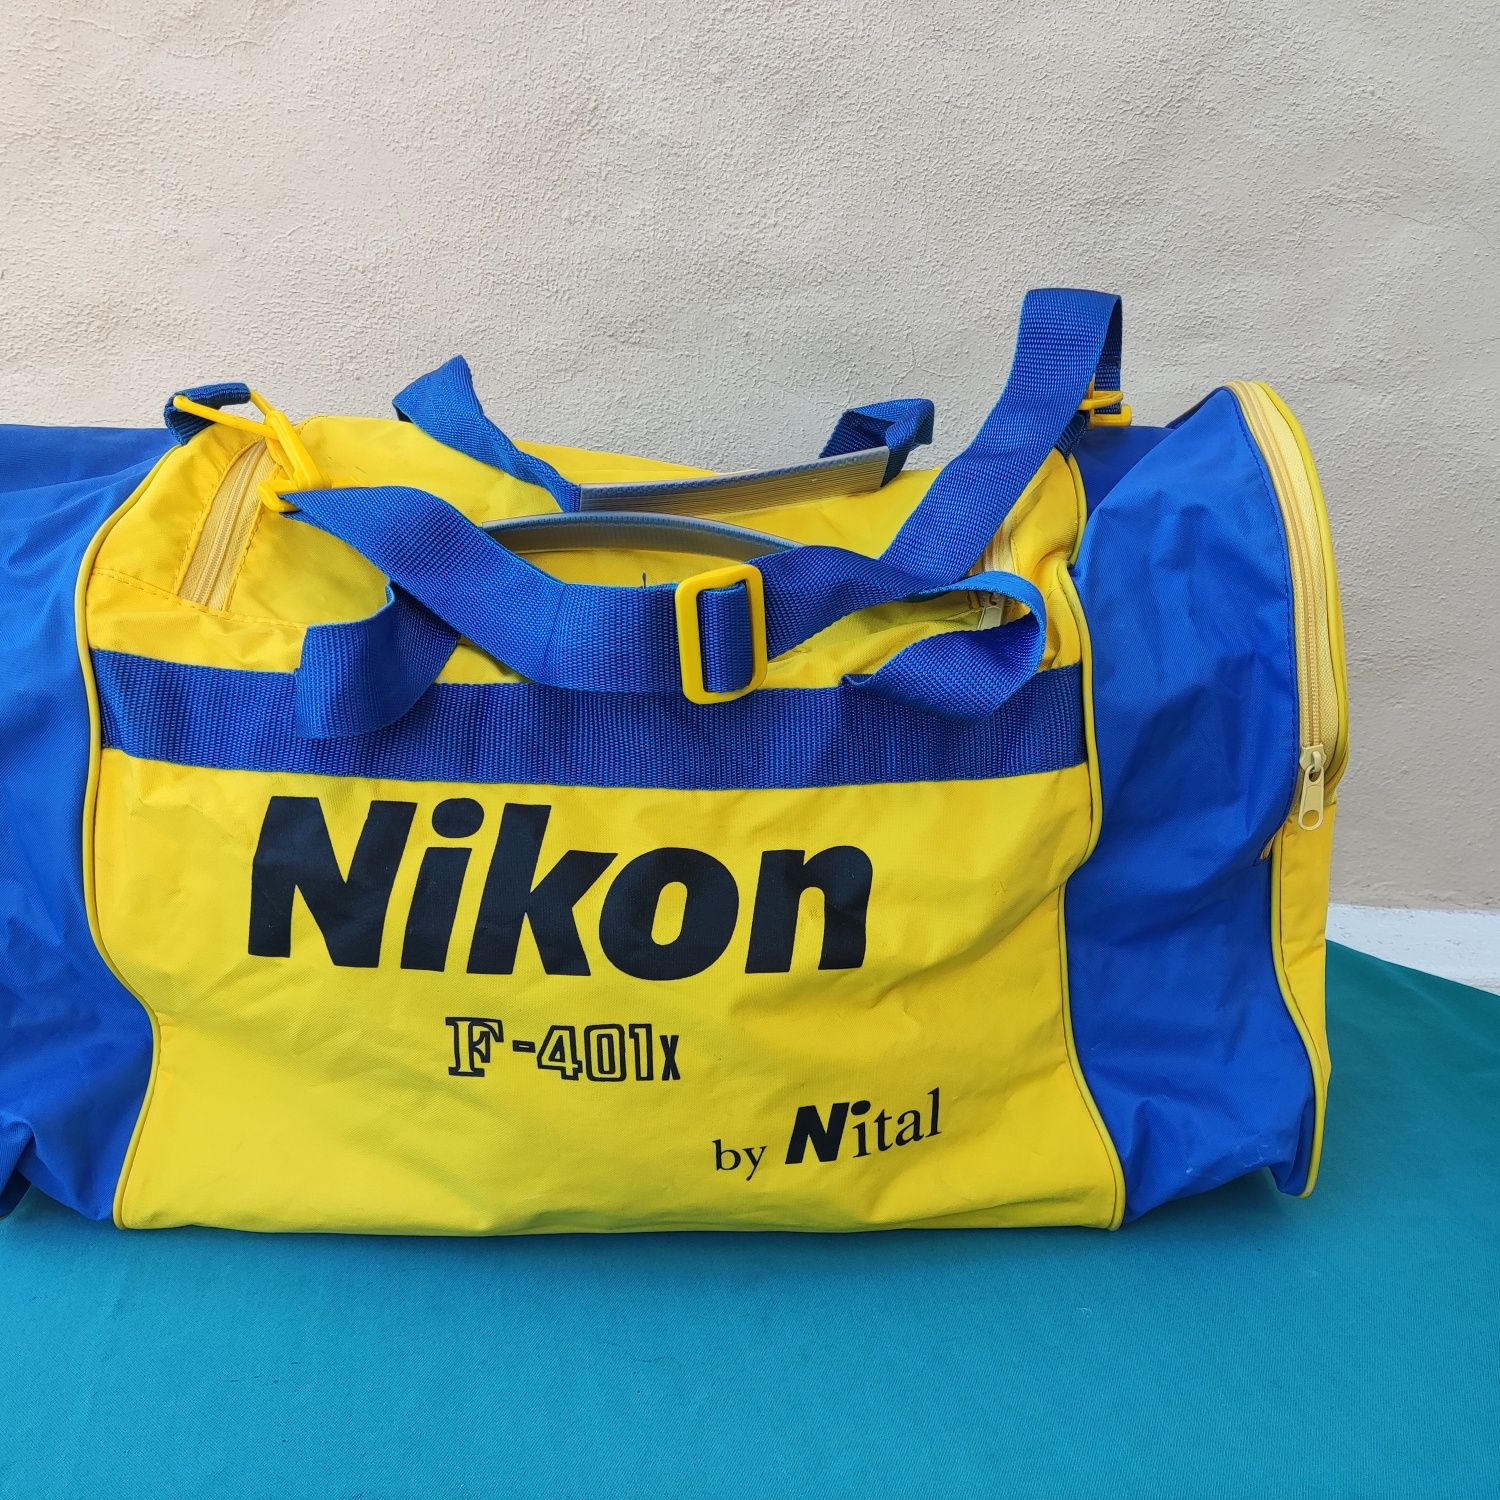 Mala de desporto publicitária da marca Nikon F-401x by Nital vintage